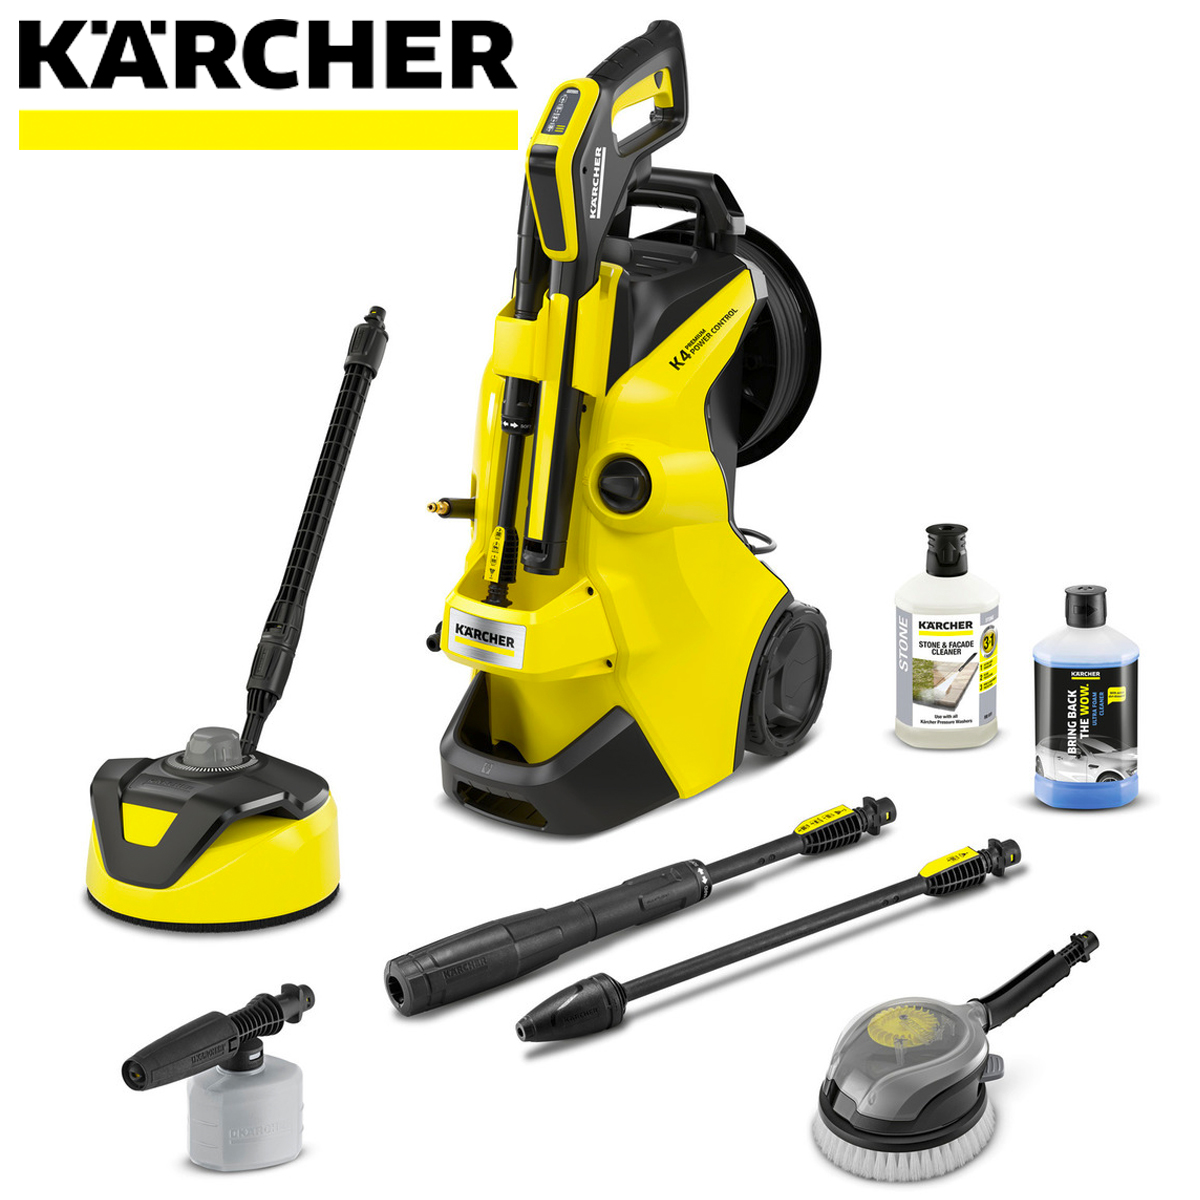 Karcher K4 Review and Upgrade #karcher #K4 #kseries 